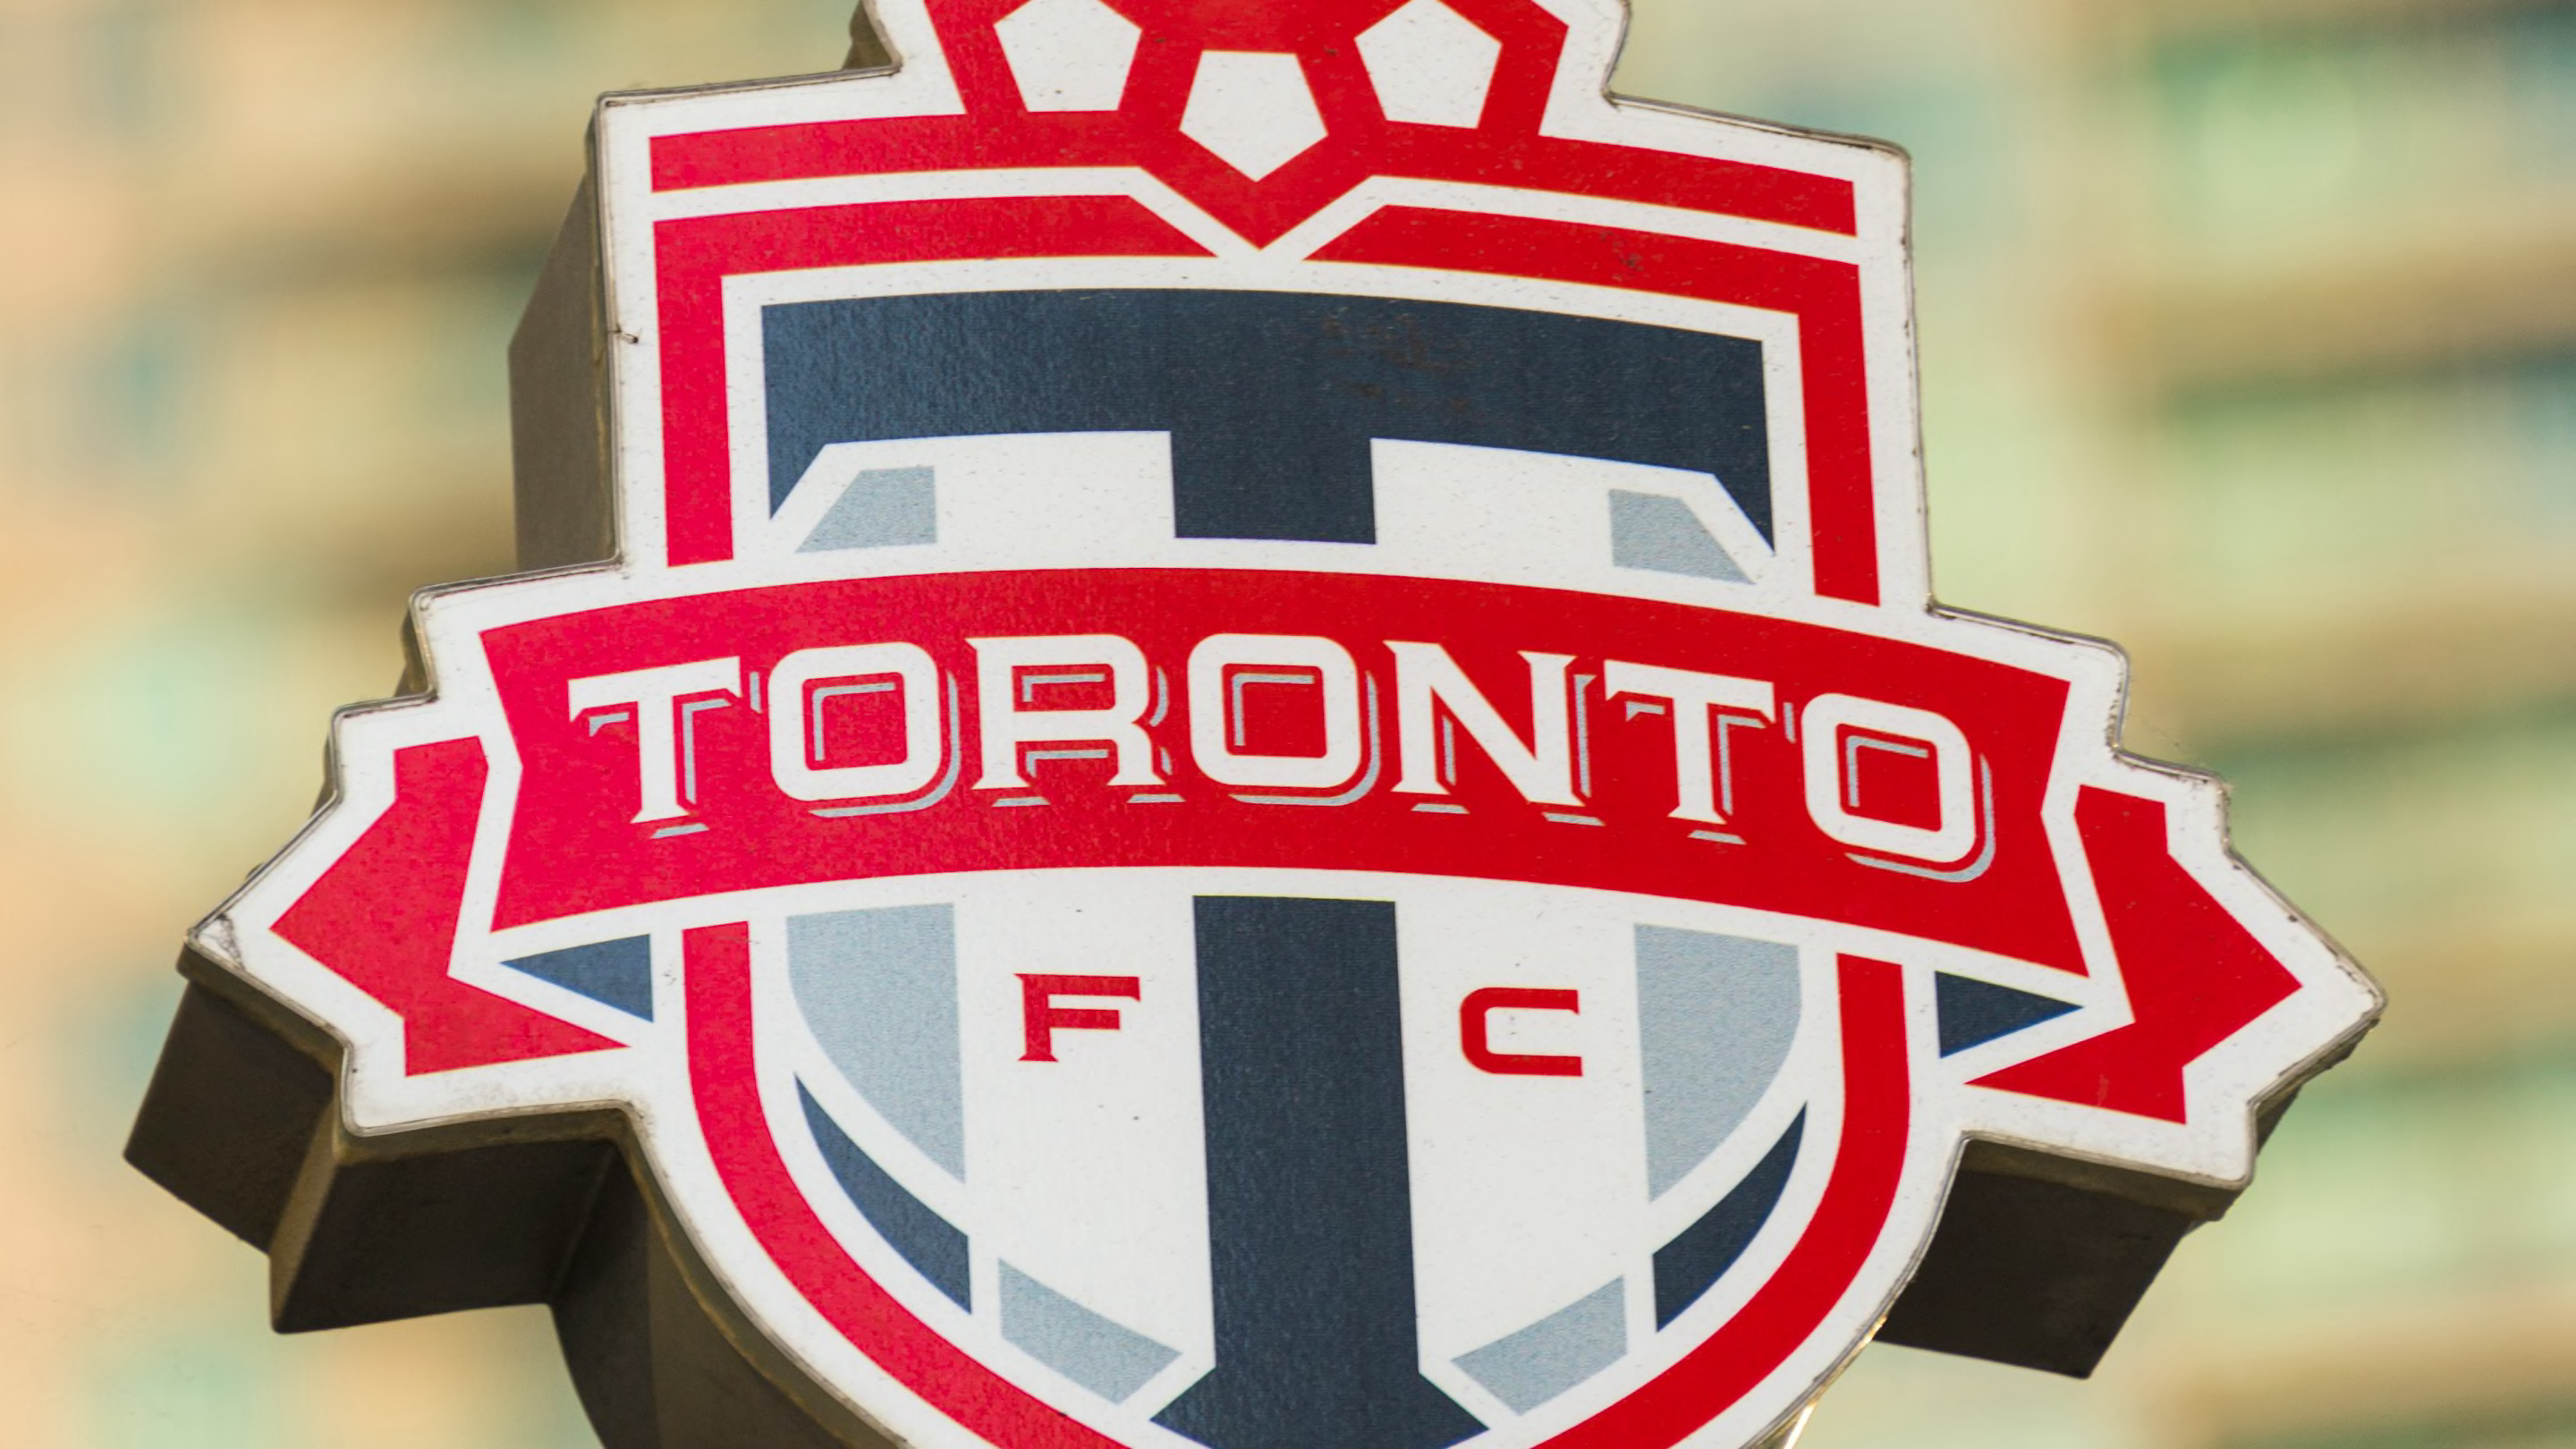 Toronto FC confirm Sean Rubio as new technical director